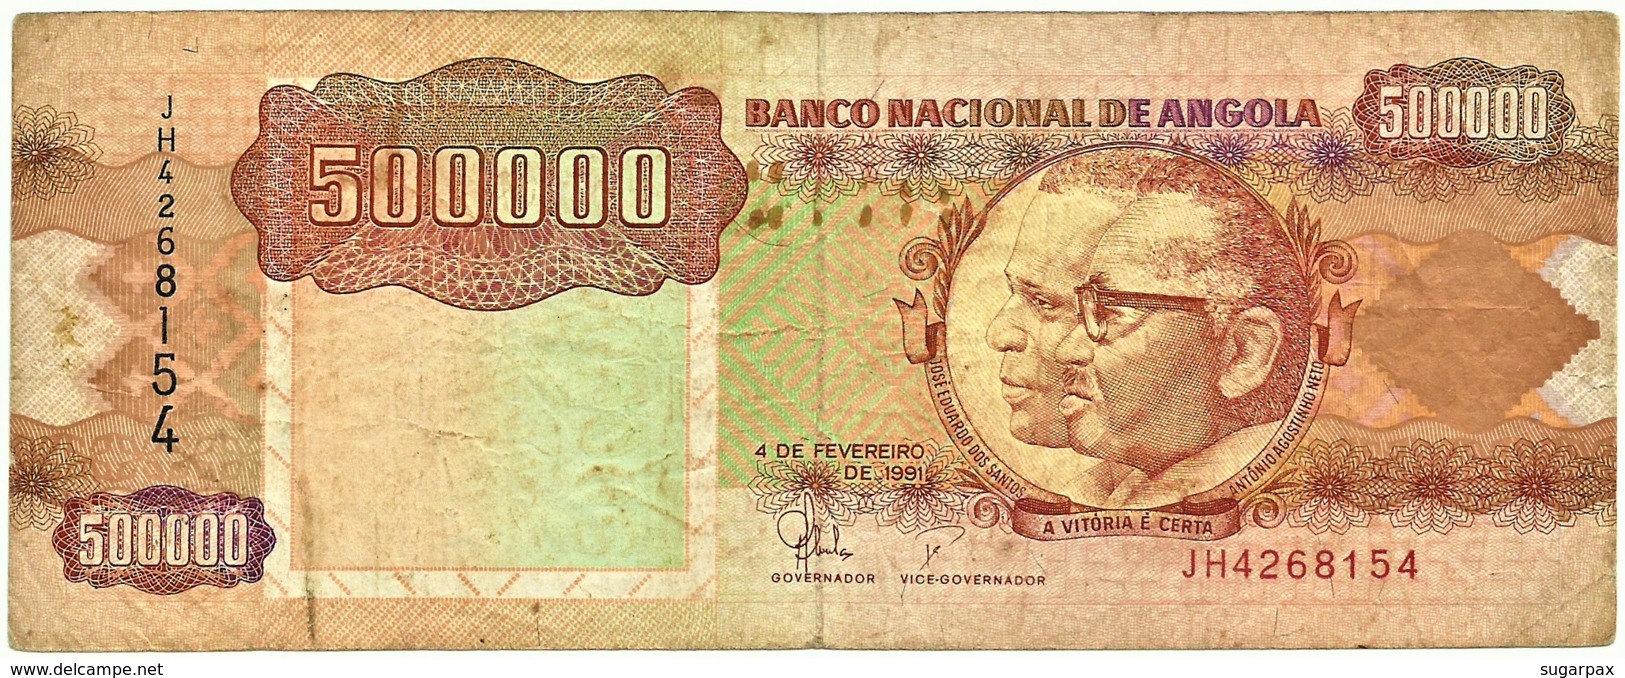 Angola - 500 000 Kwanzas - 04.02.1991 - Pick 134 -Sign. 19-Série JH - José Eduardo Dos Santos E Agostinho Neto 500000 - Angola